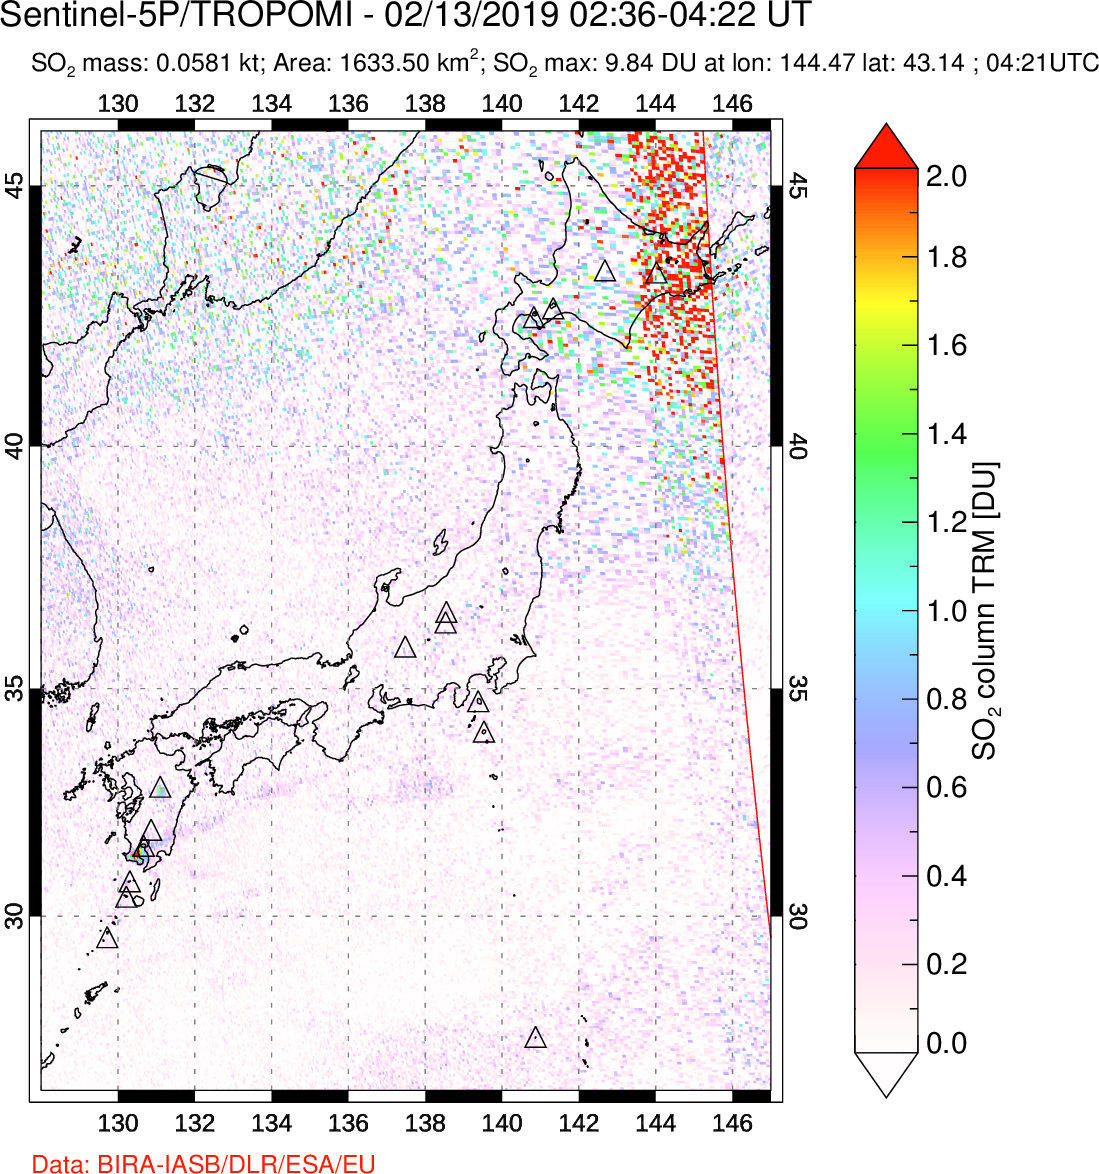 A sulfur dioxide image over Japan on Feb 13, 2019.